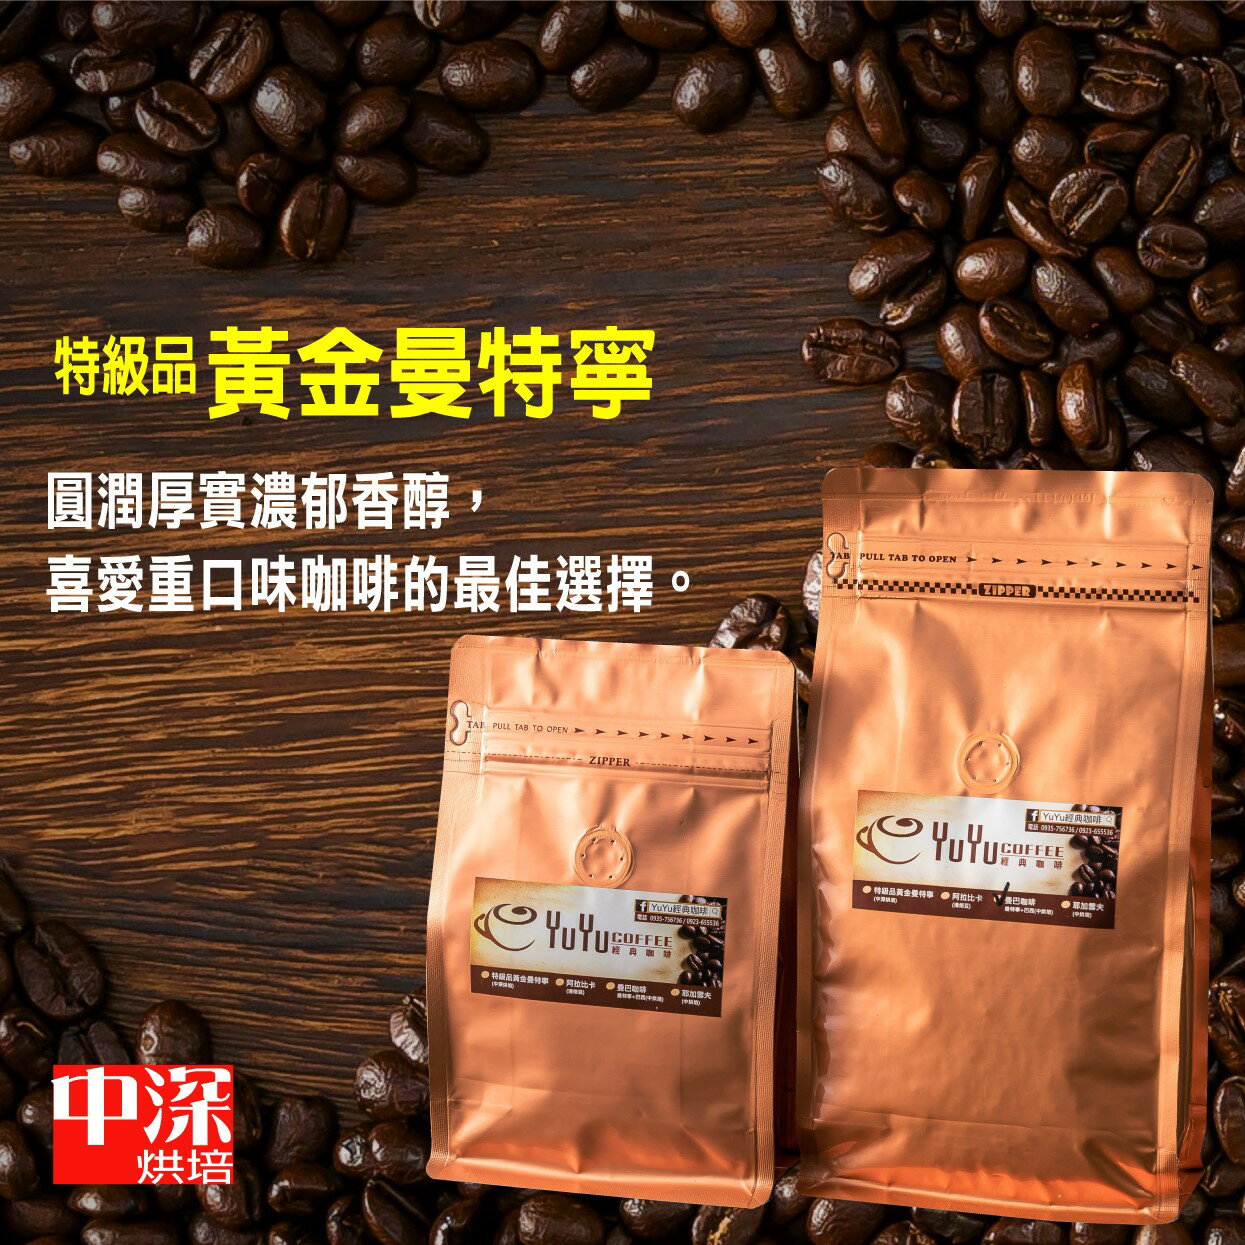 YuYu經典咖啡 特級品/黃金曼特寧(中深烘培) 咖啡豆 225g/450g